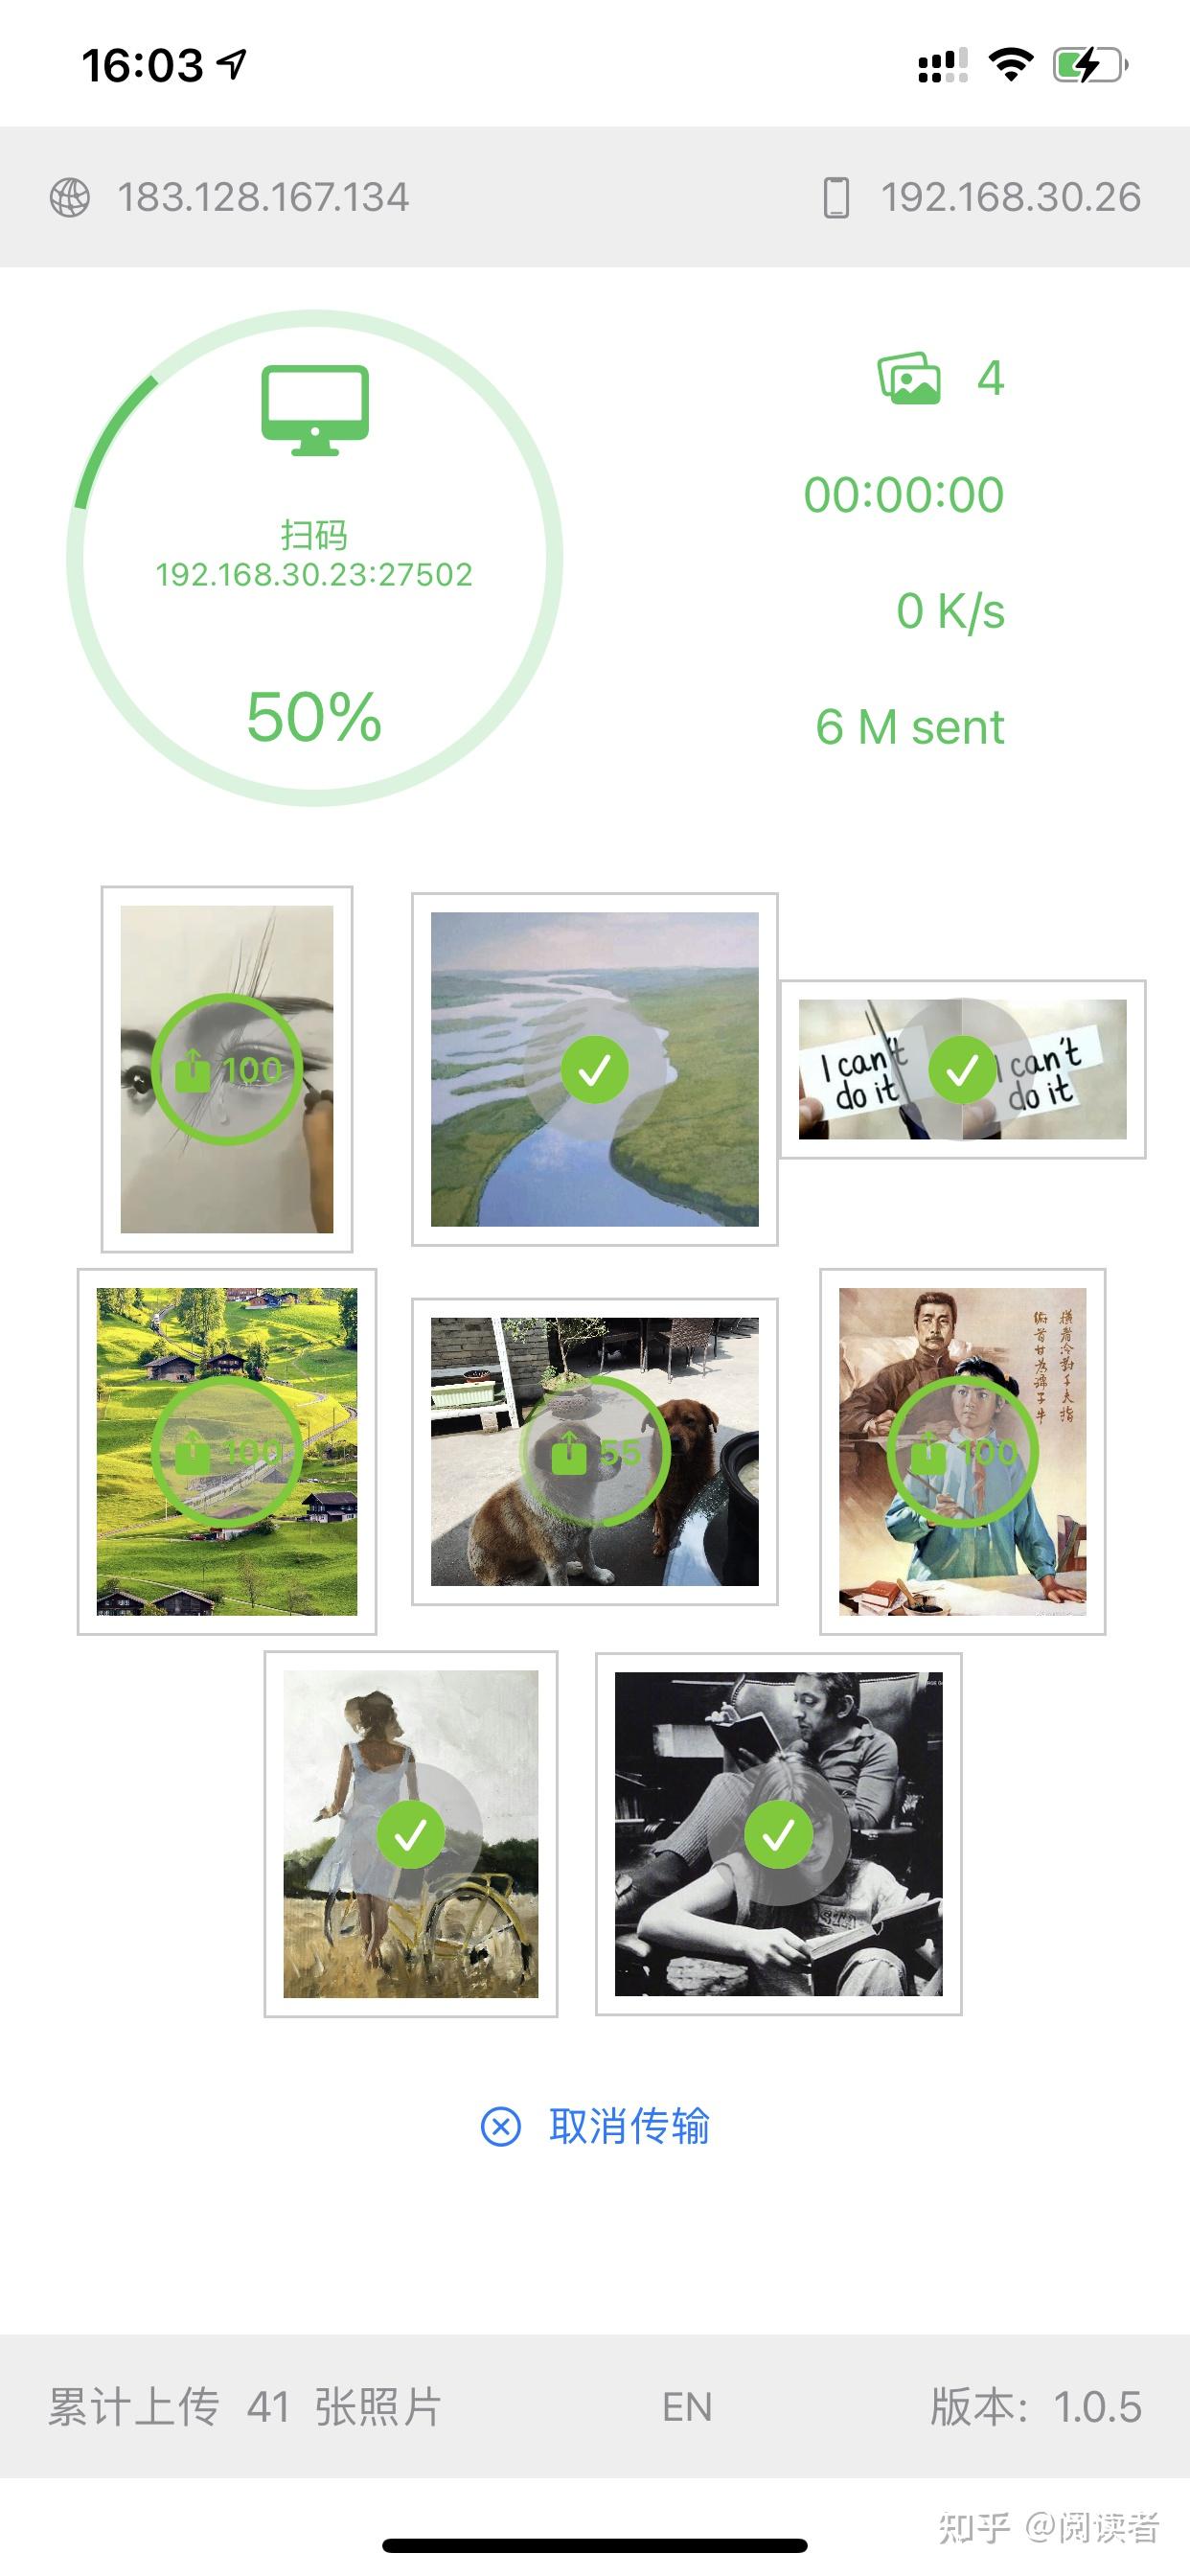 全新的索尼图传app: imaging edge，真的好用太多了 - 视频Video